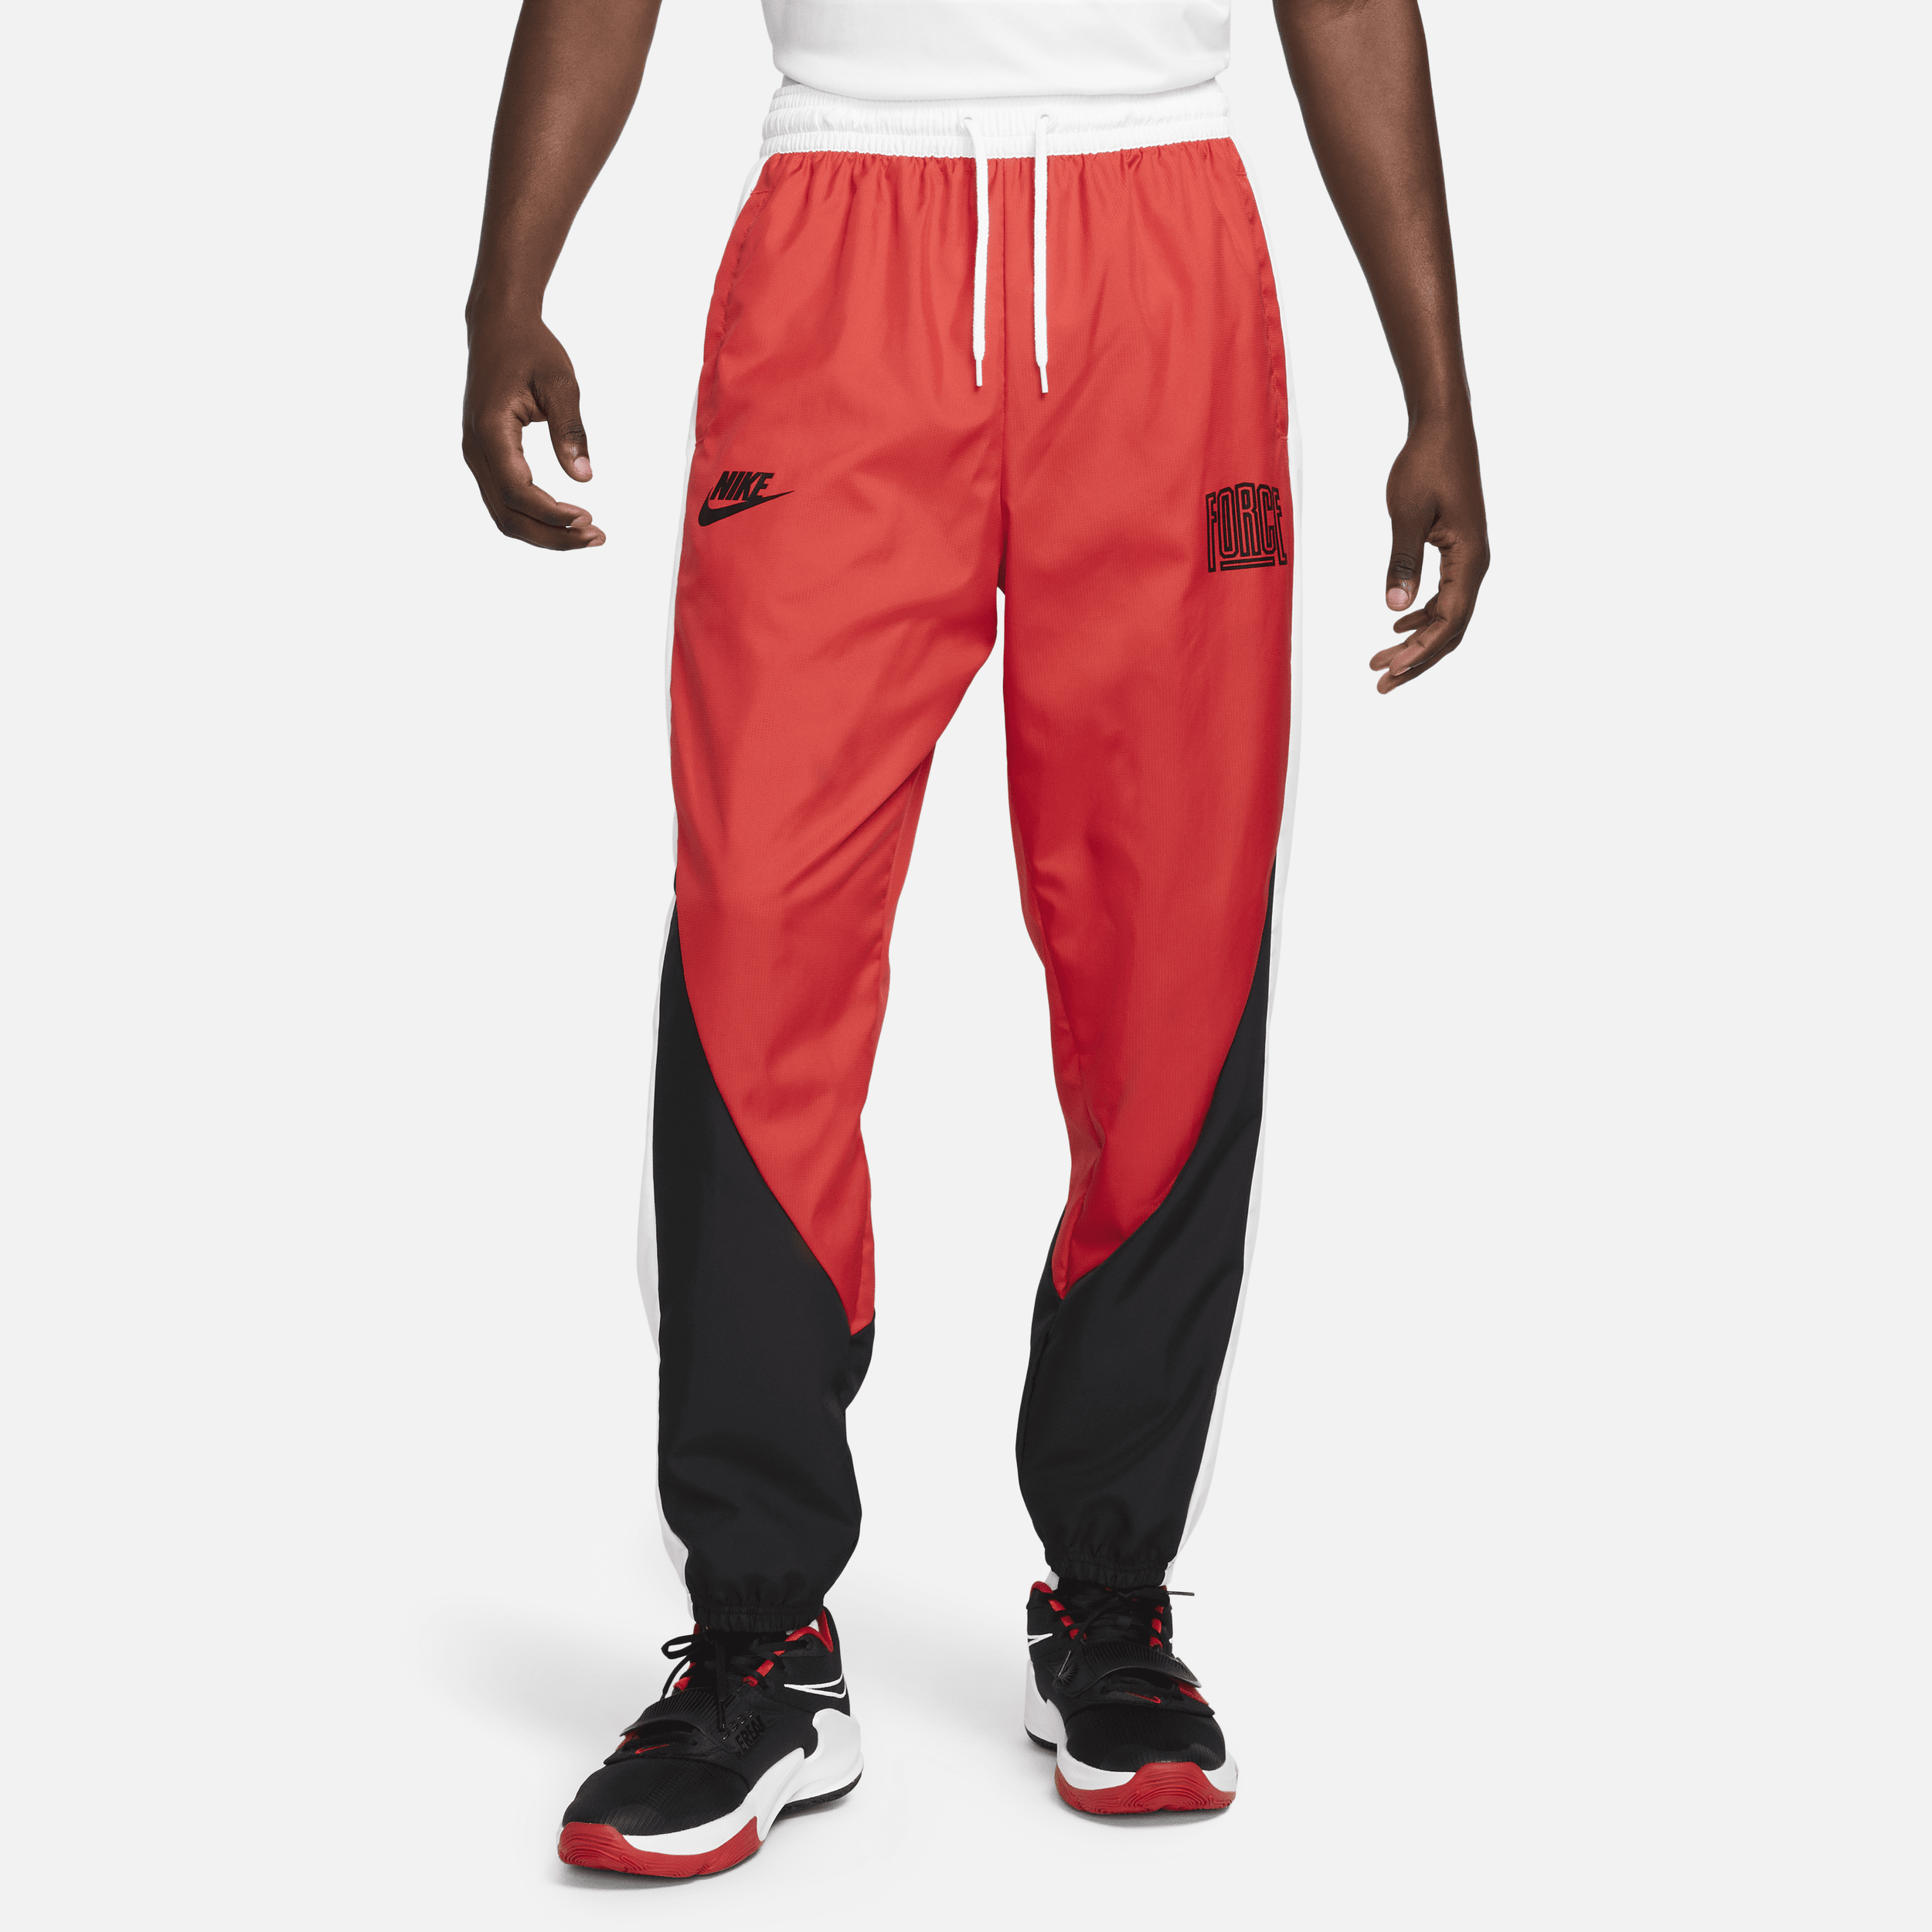 Nike Starting 5 Pantalón de baloncesto - Hombre - Rojo